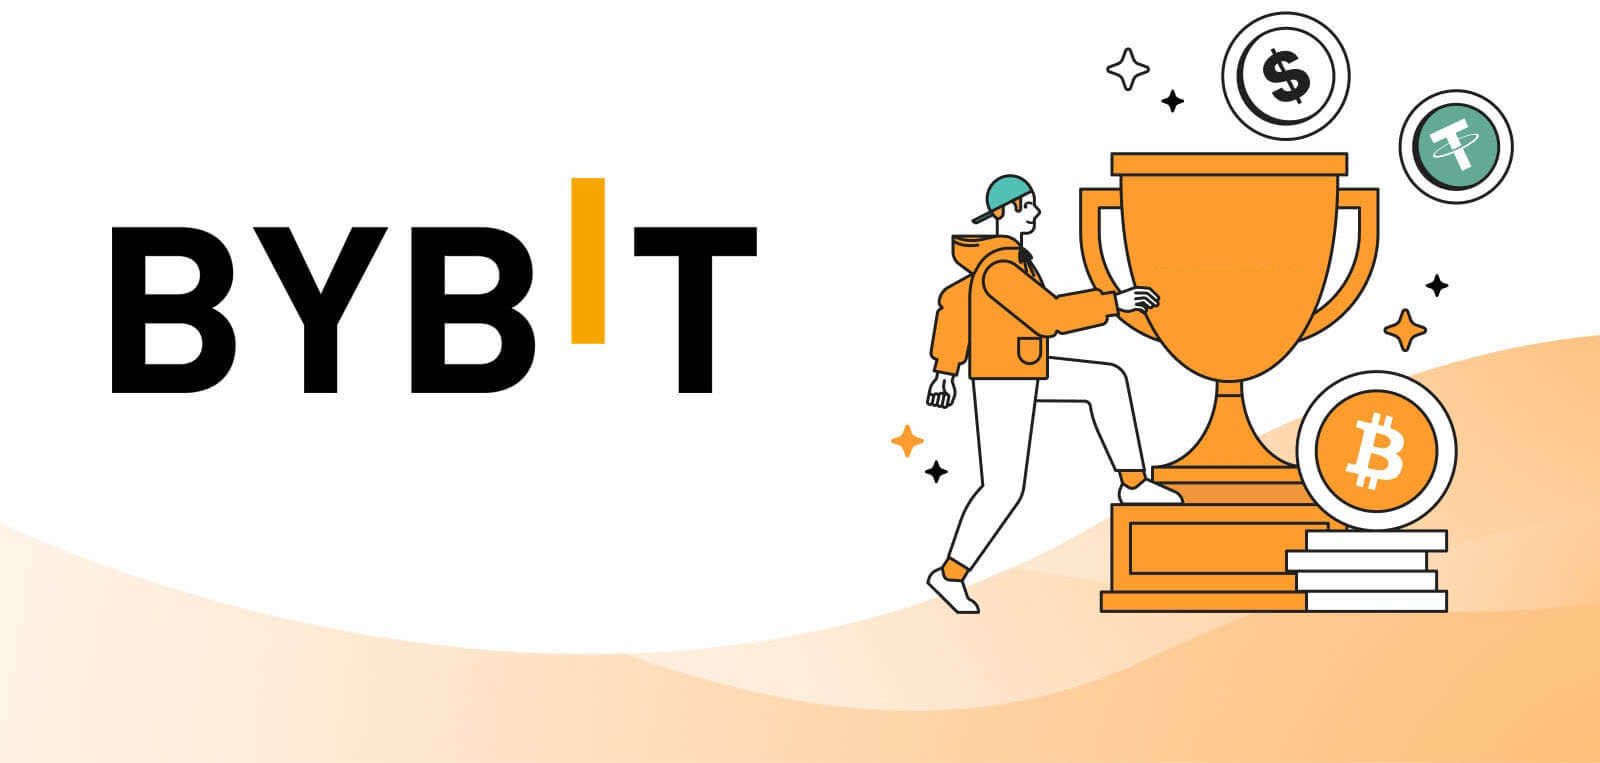 جوایز و کوپن های تجاری Bybit - مزایای کاربر تا 90 دلار